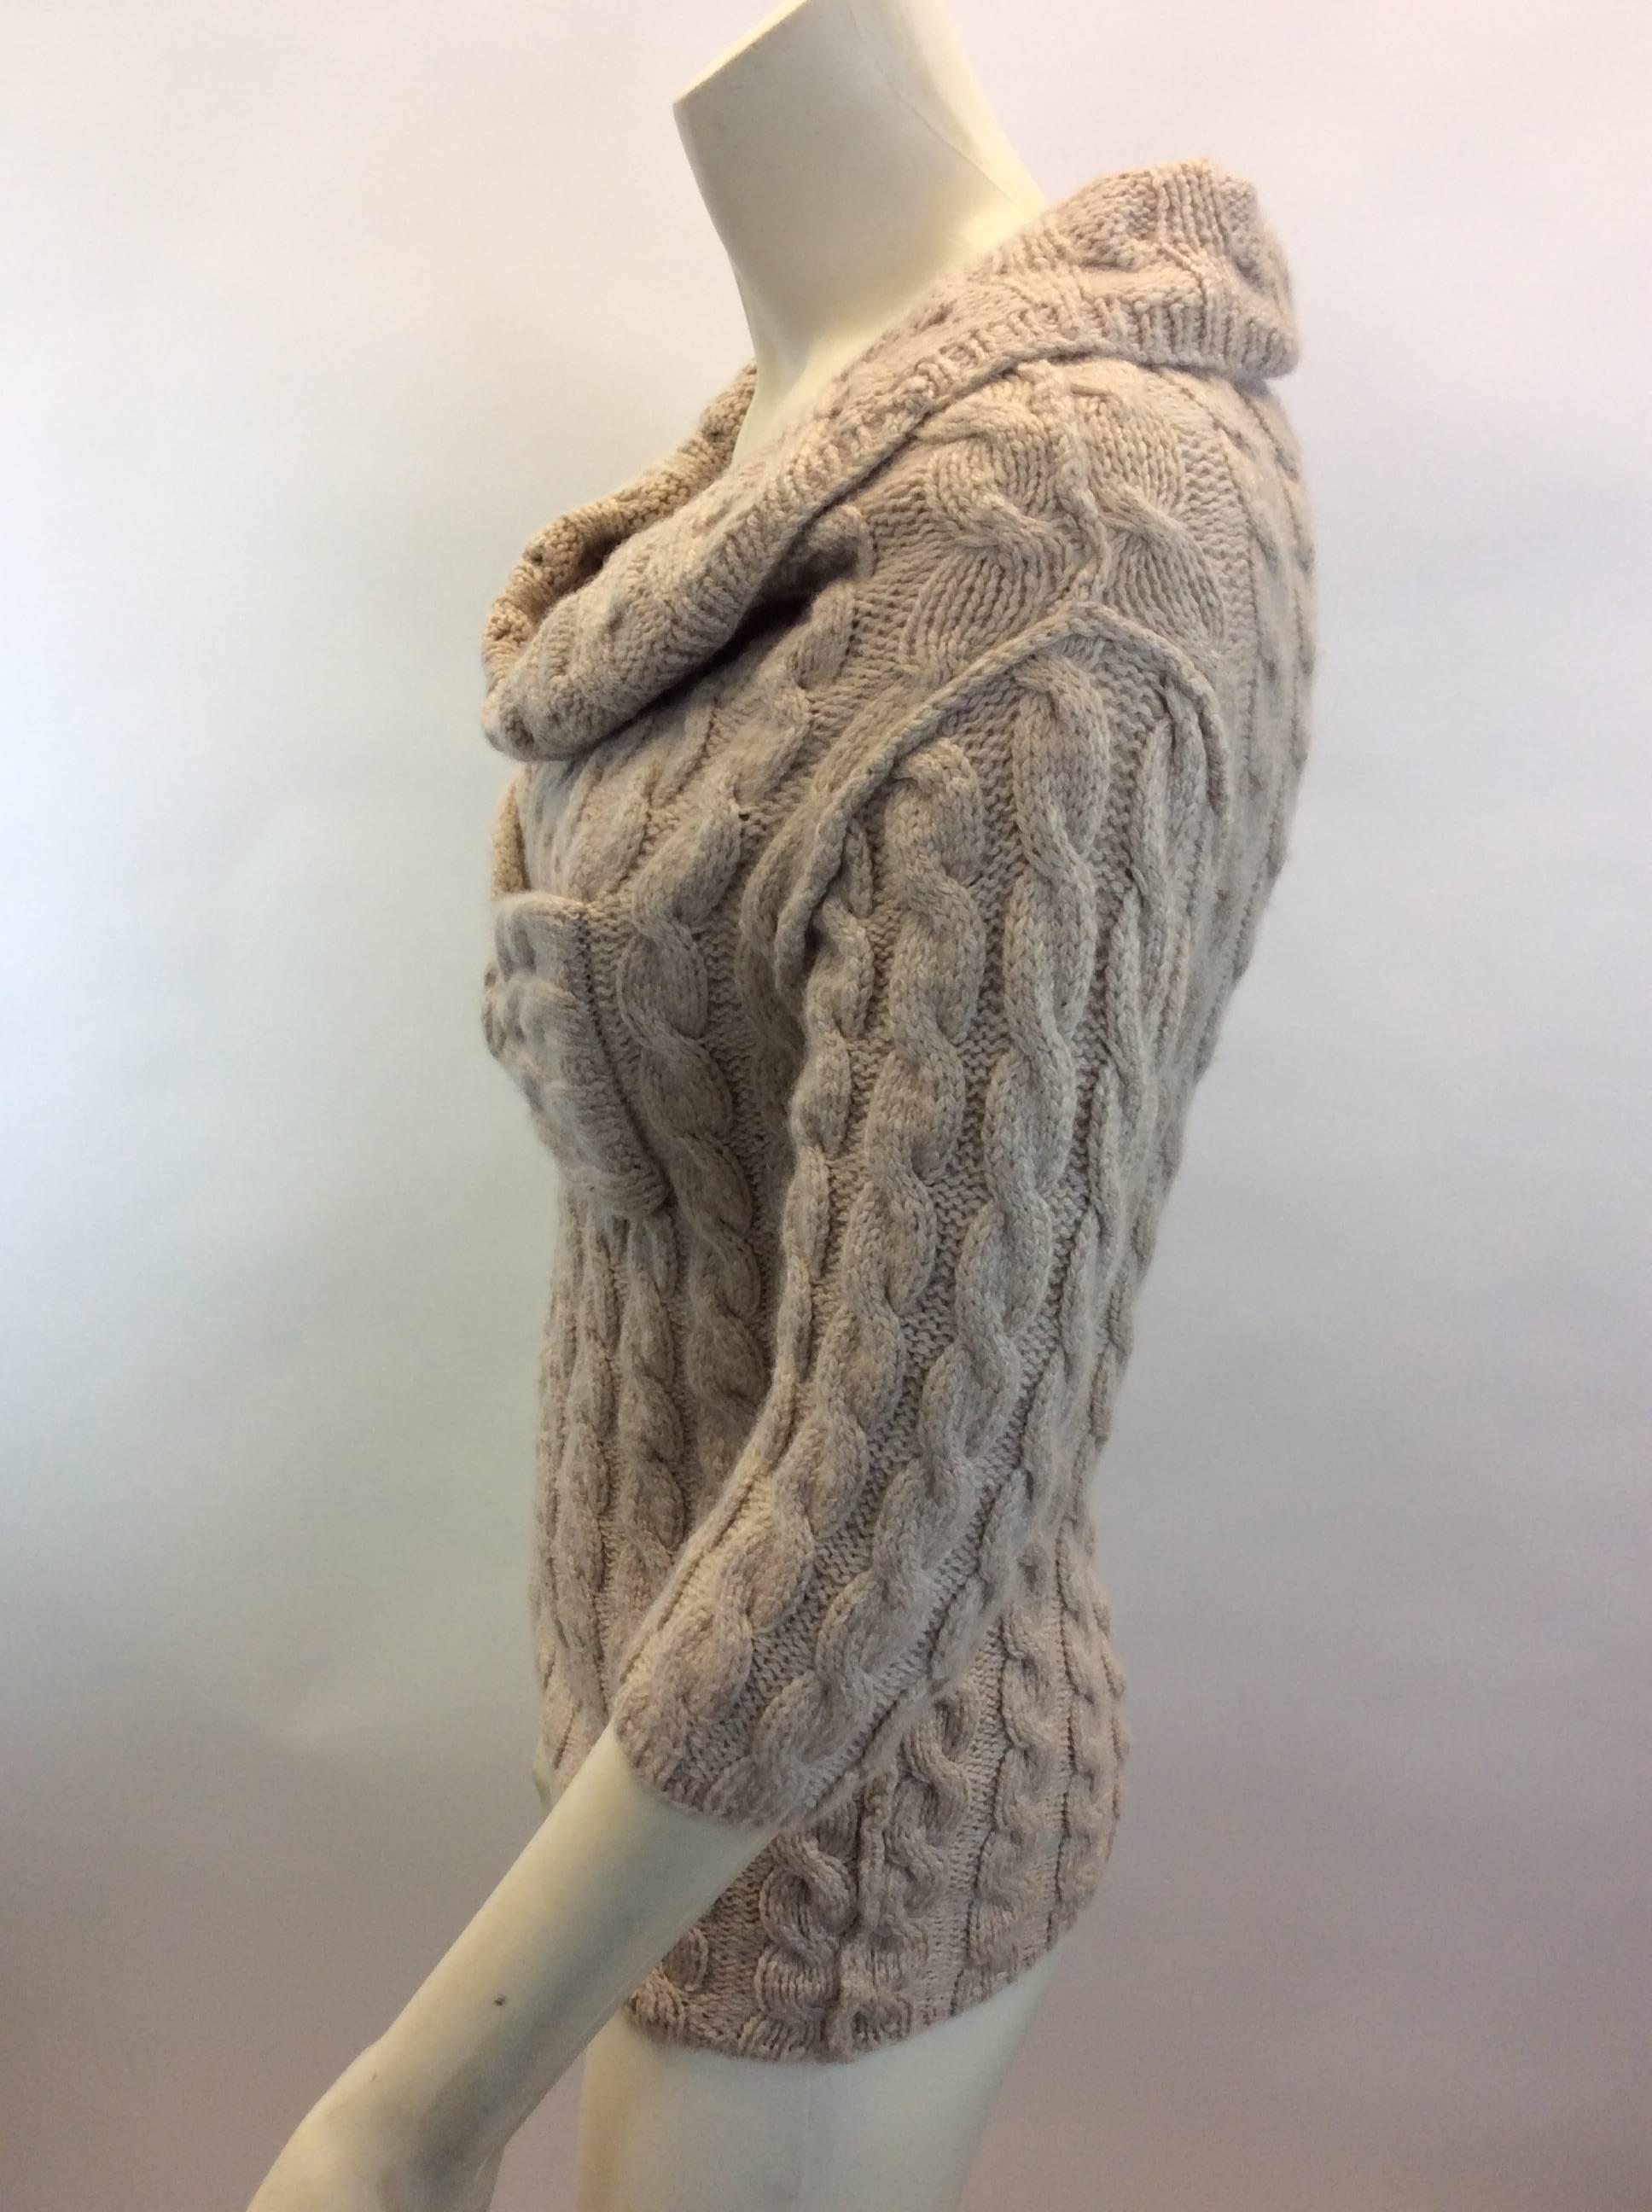 Oscar de la Renta Tan Cashmere Cable Knit Sweater
$250
Made in Russia
100% Cashmere
Size Medium
Length 23